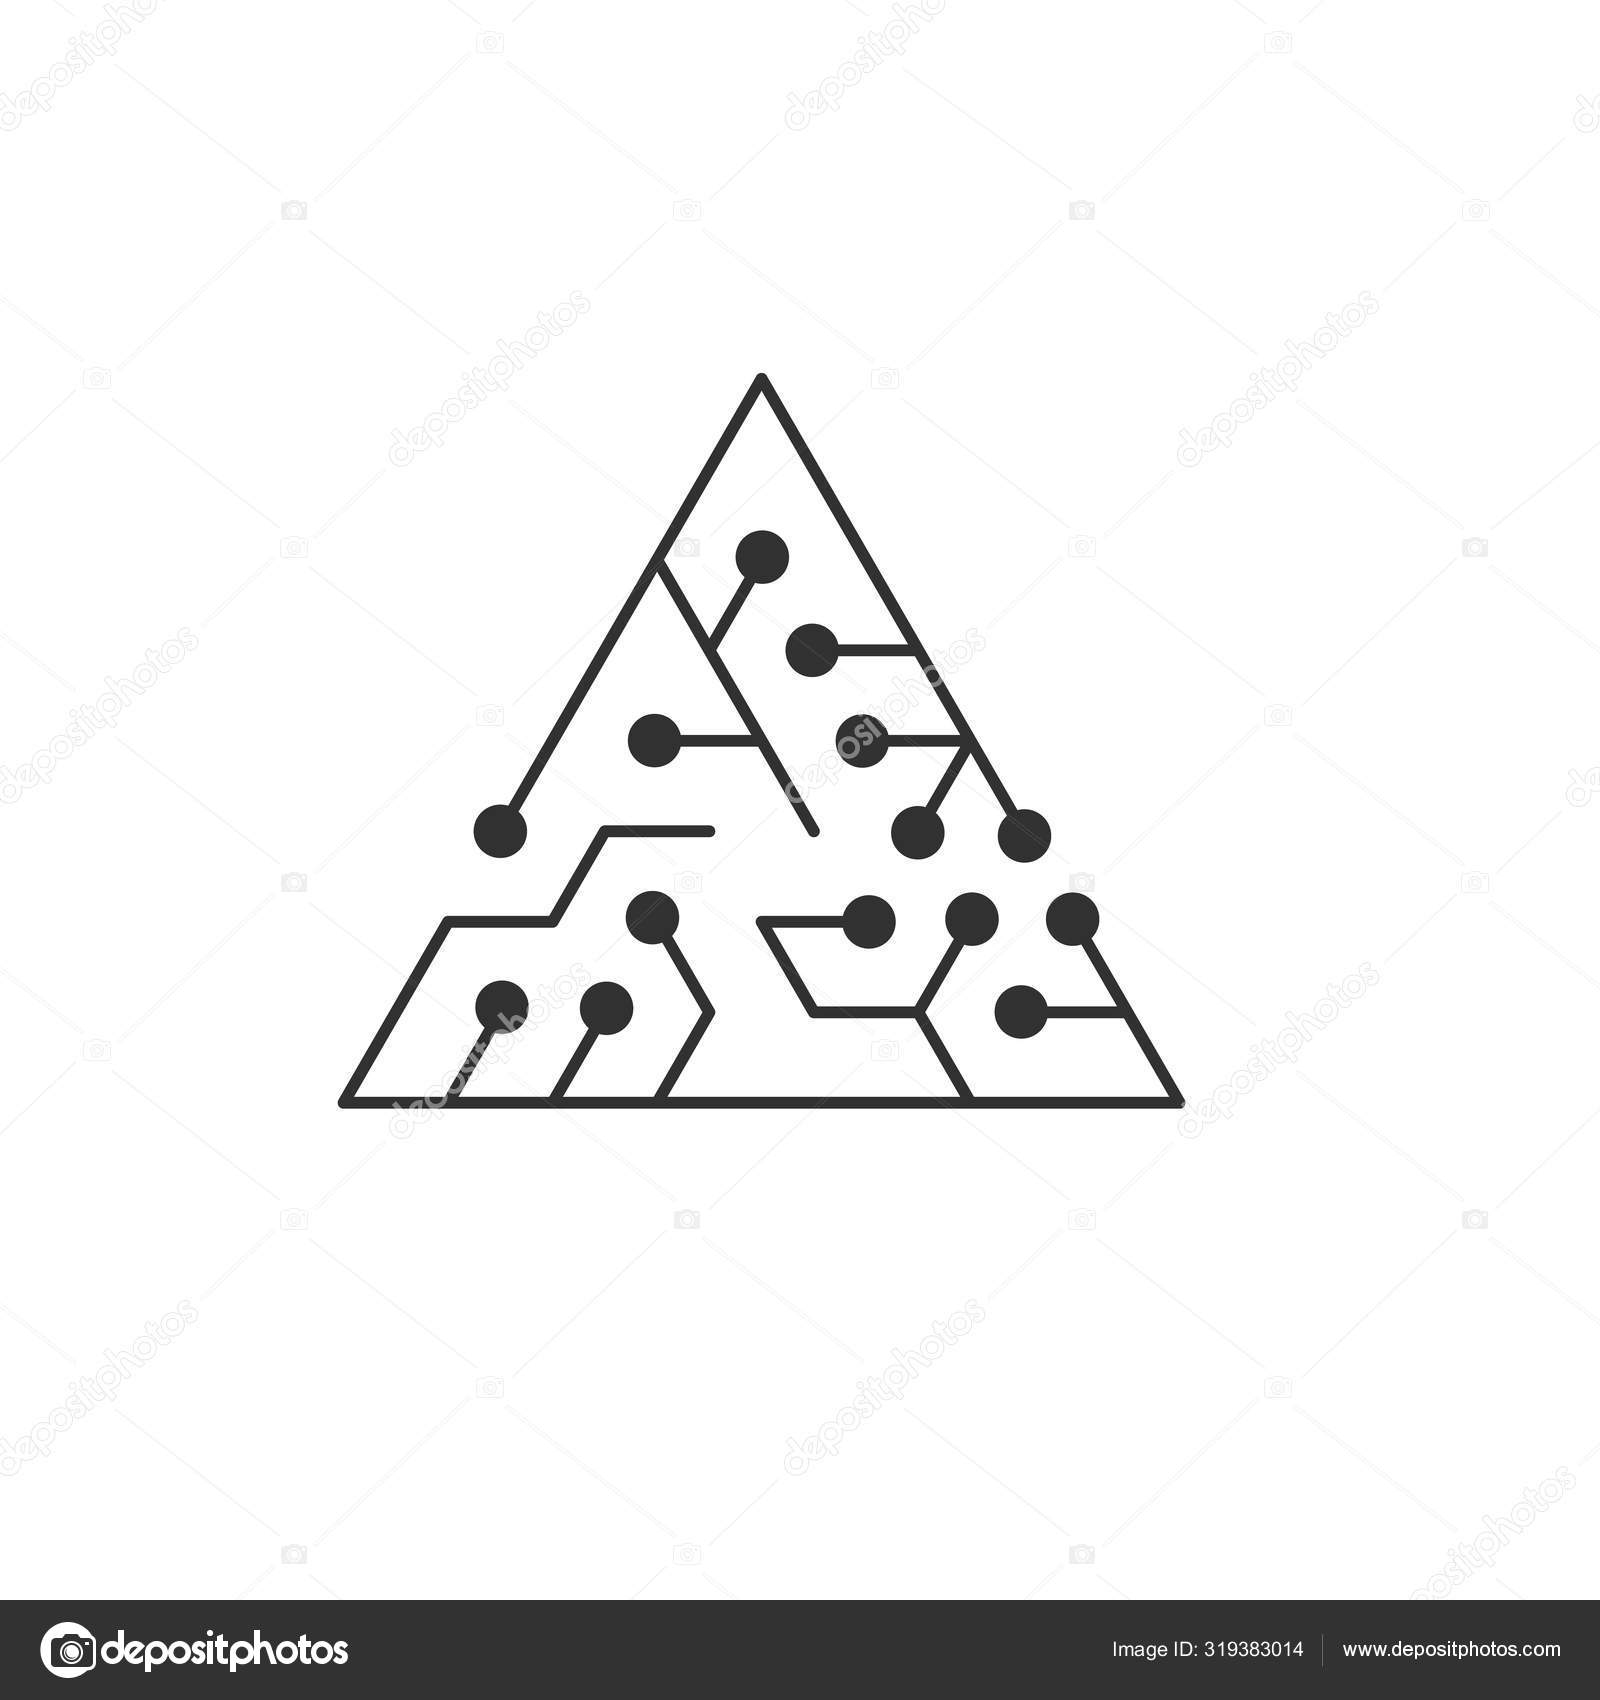 Иконка На Доске. Абстрактный Треугольник Формы ИТ-Лабиринт.